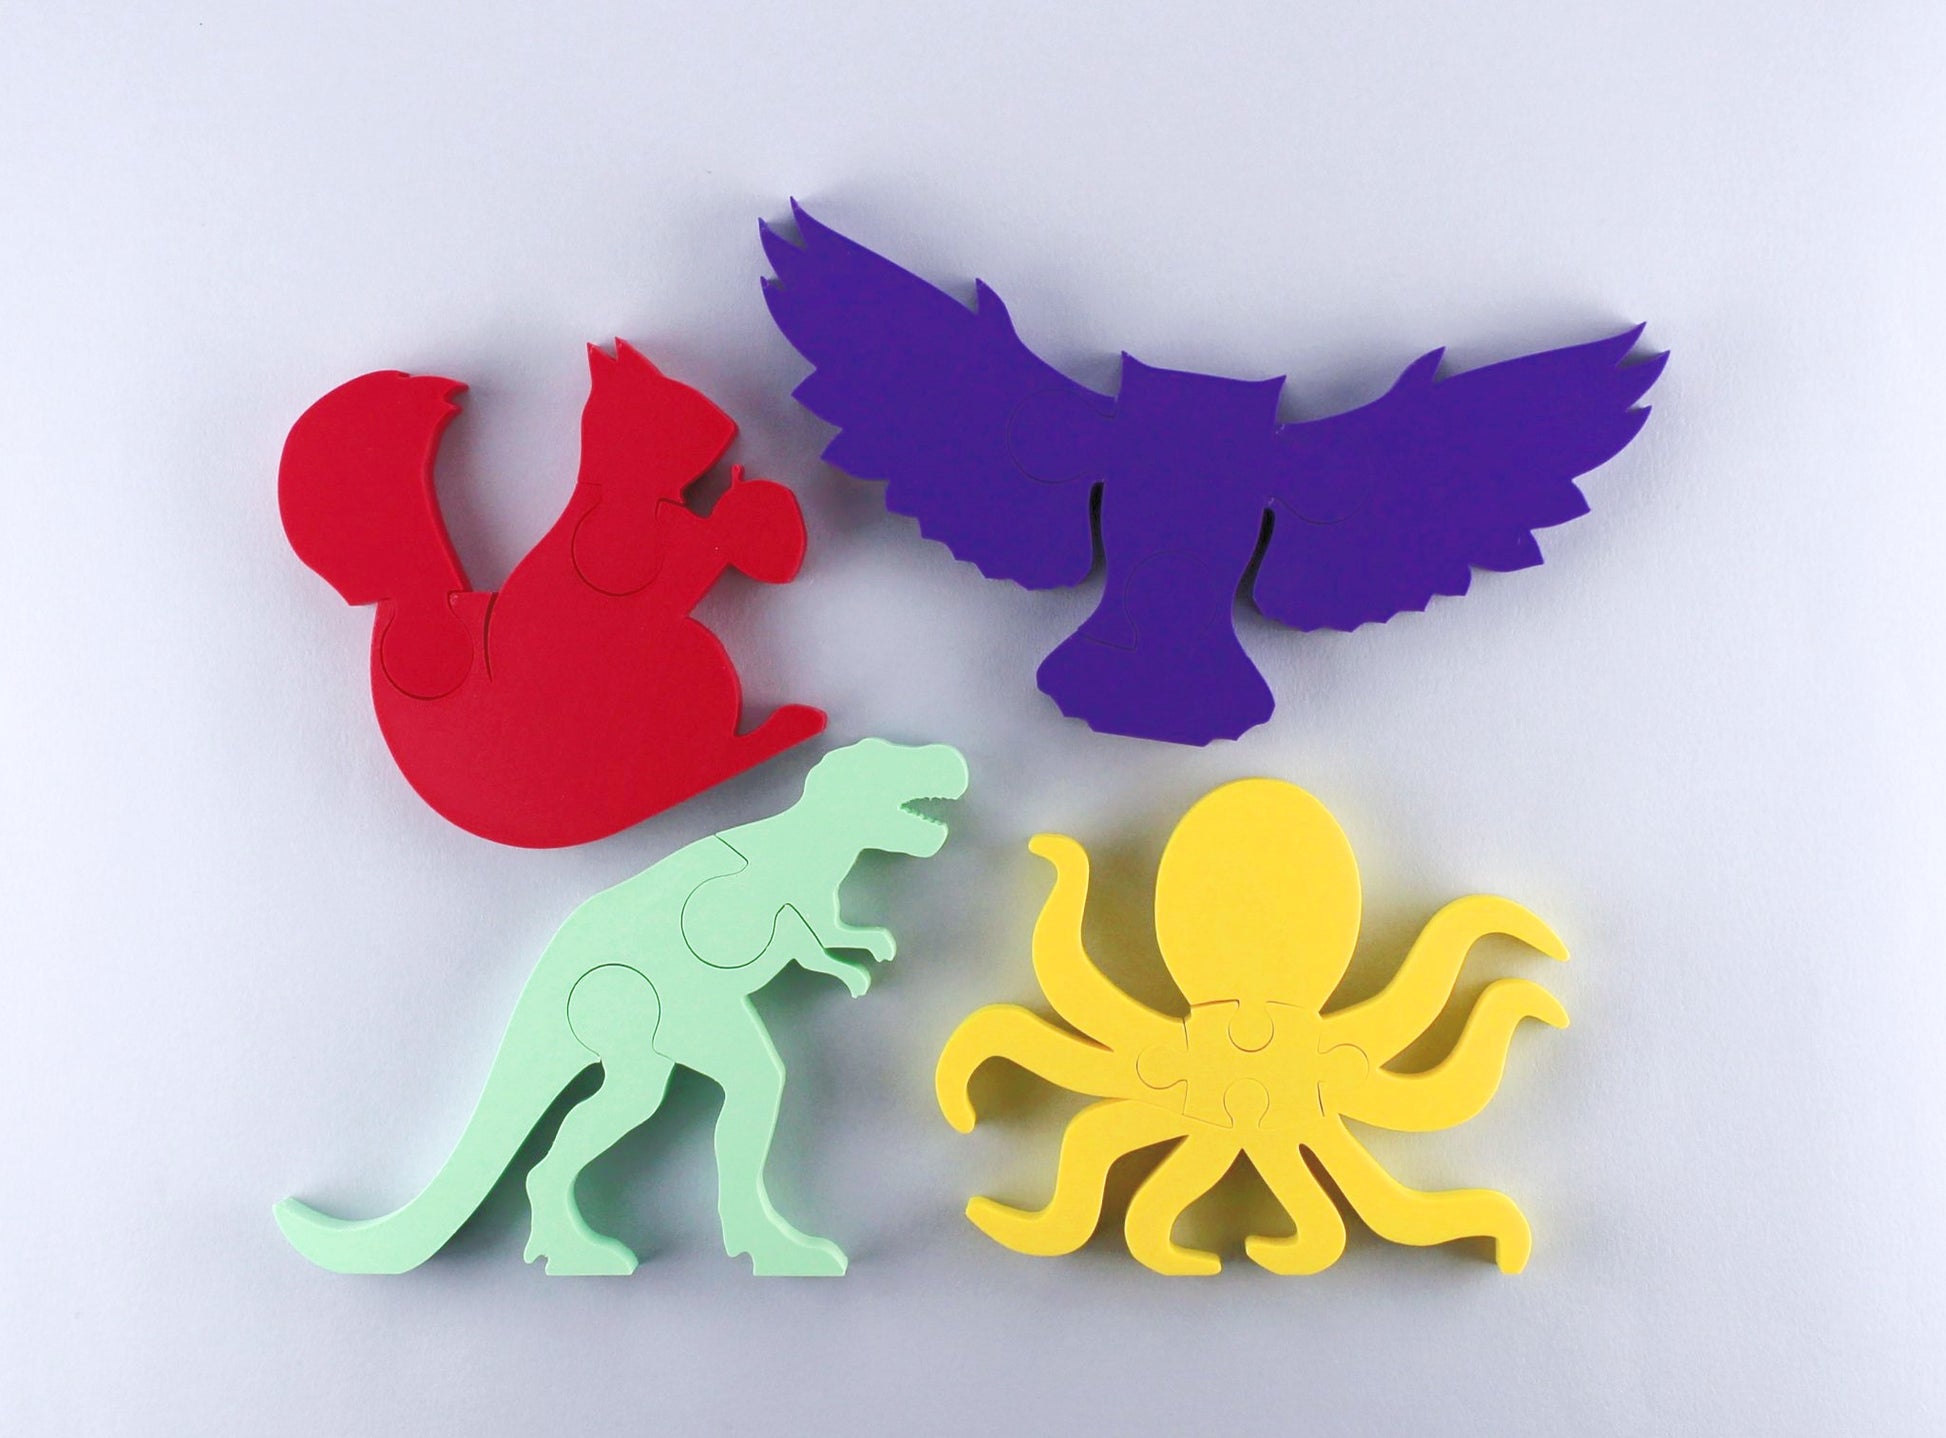 Four animal puzzles: t-rex, octopus, owl, squirrel